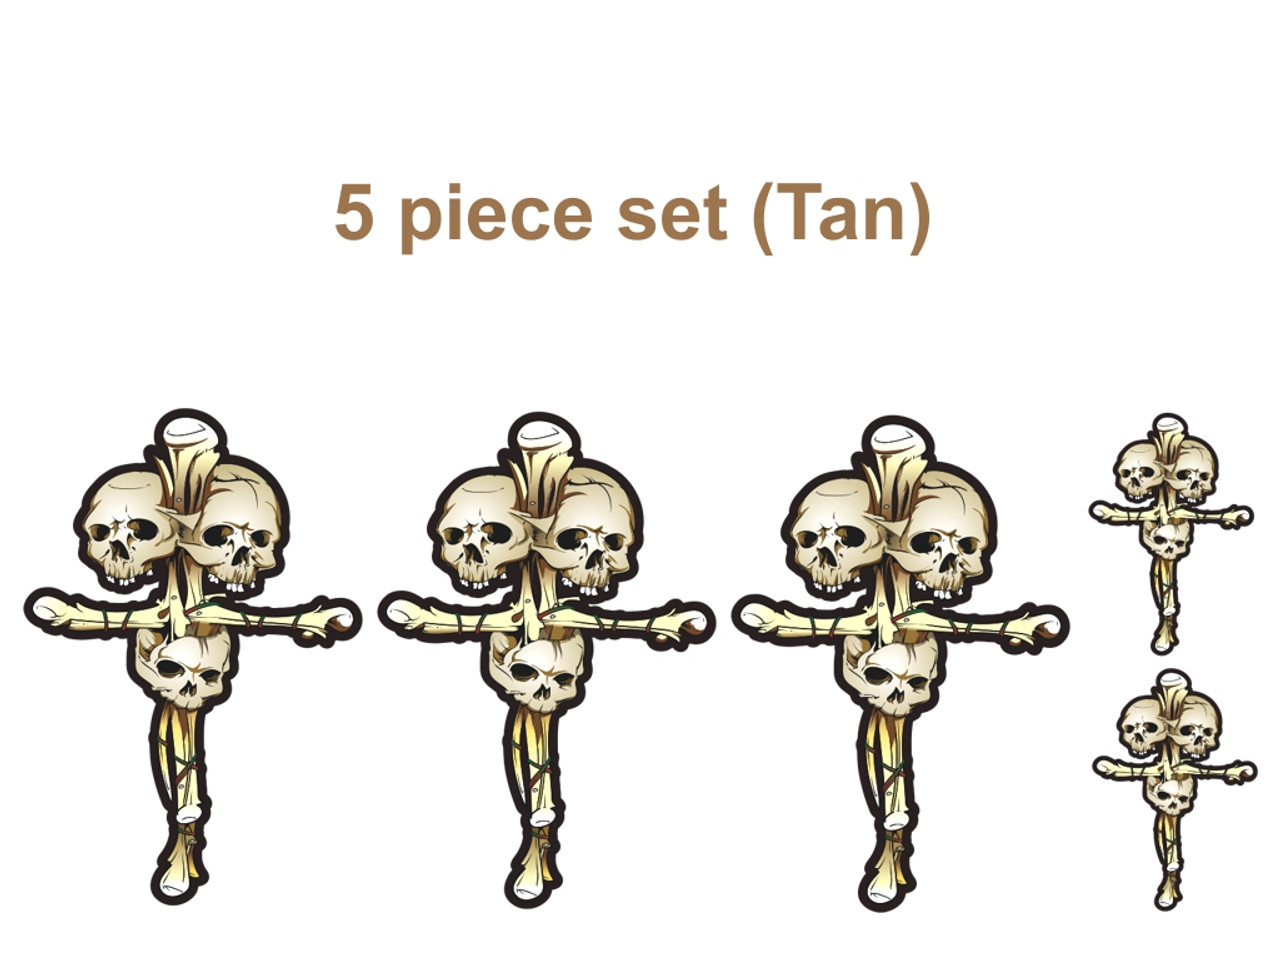  5 piece set (Tan)